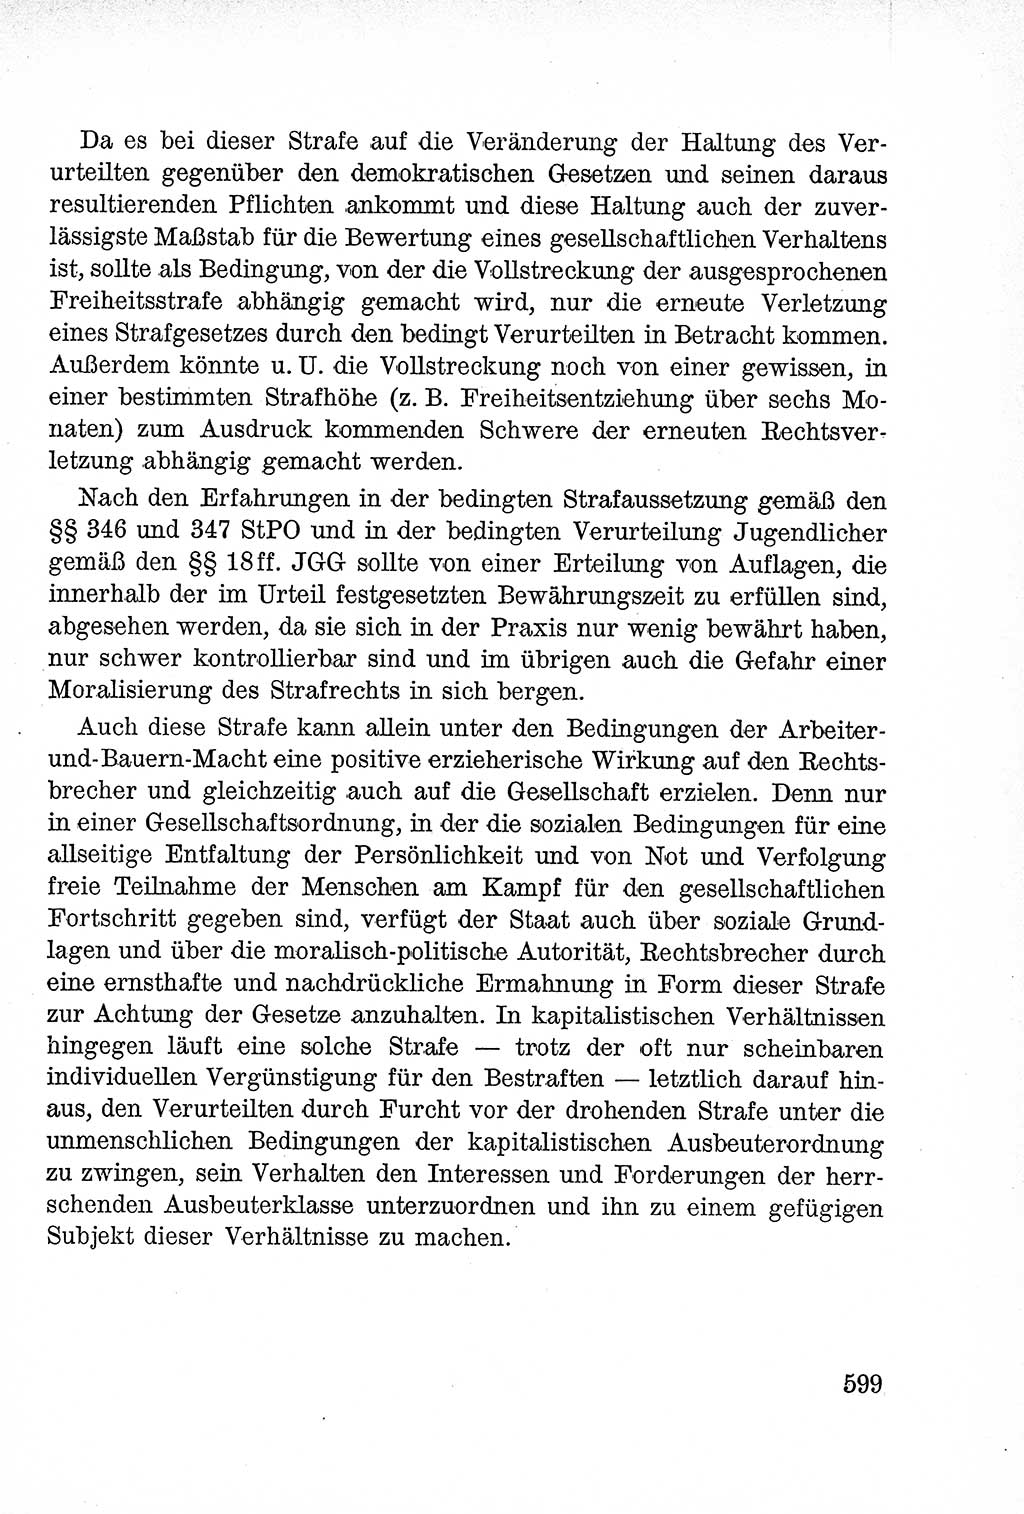 Lehrbuch des Strafrechts der Deutschen Demokratischen Republik (DDR), Allgemeiner Teil 1957, Seite 599 (Lb. Strafr. DDR AT 1957, S. 599)